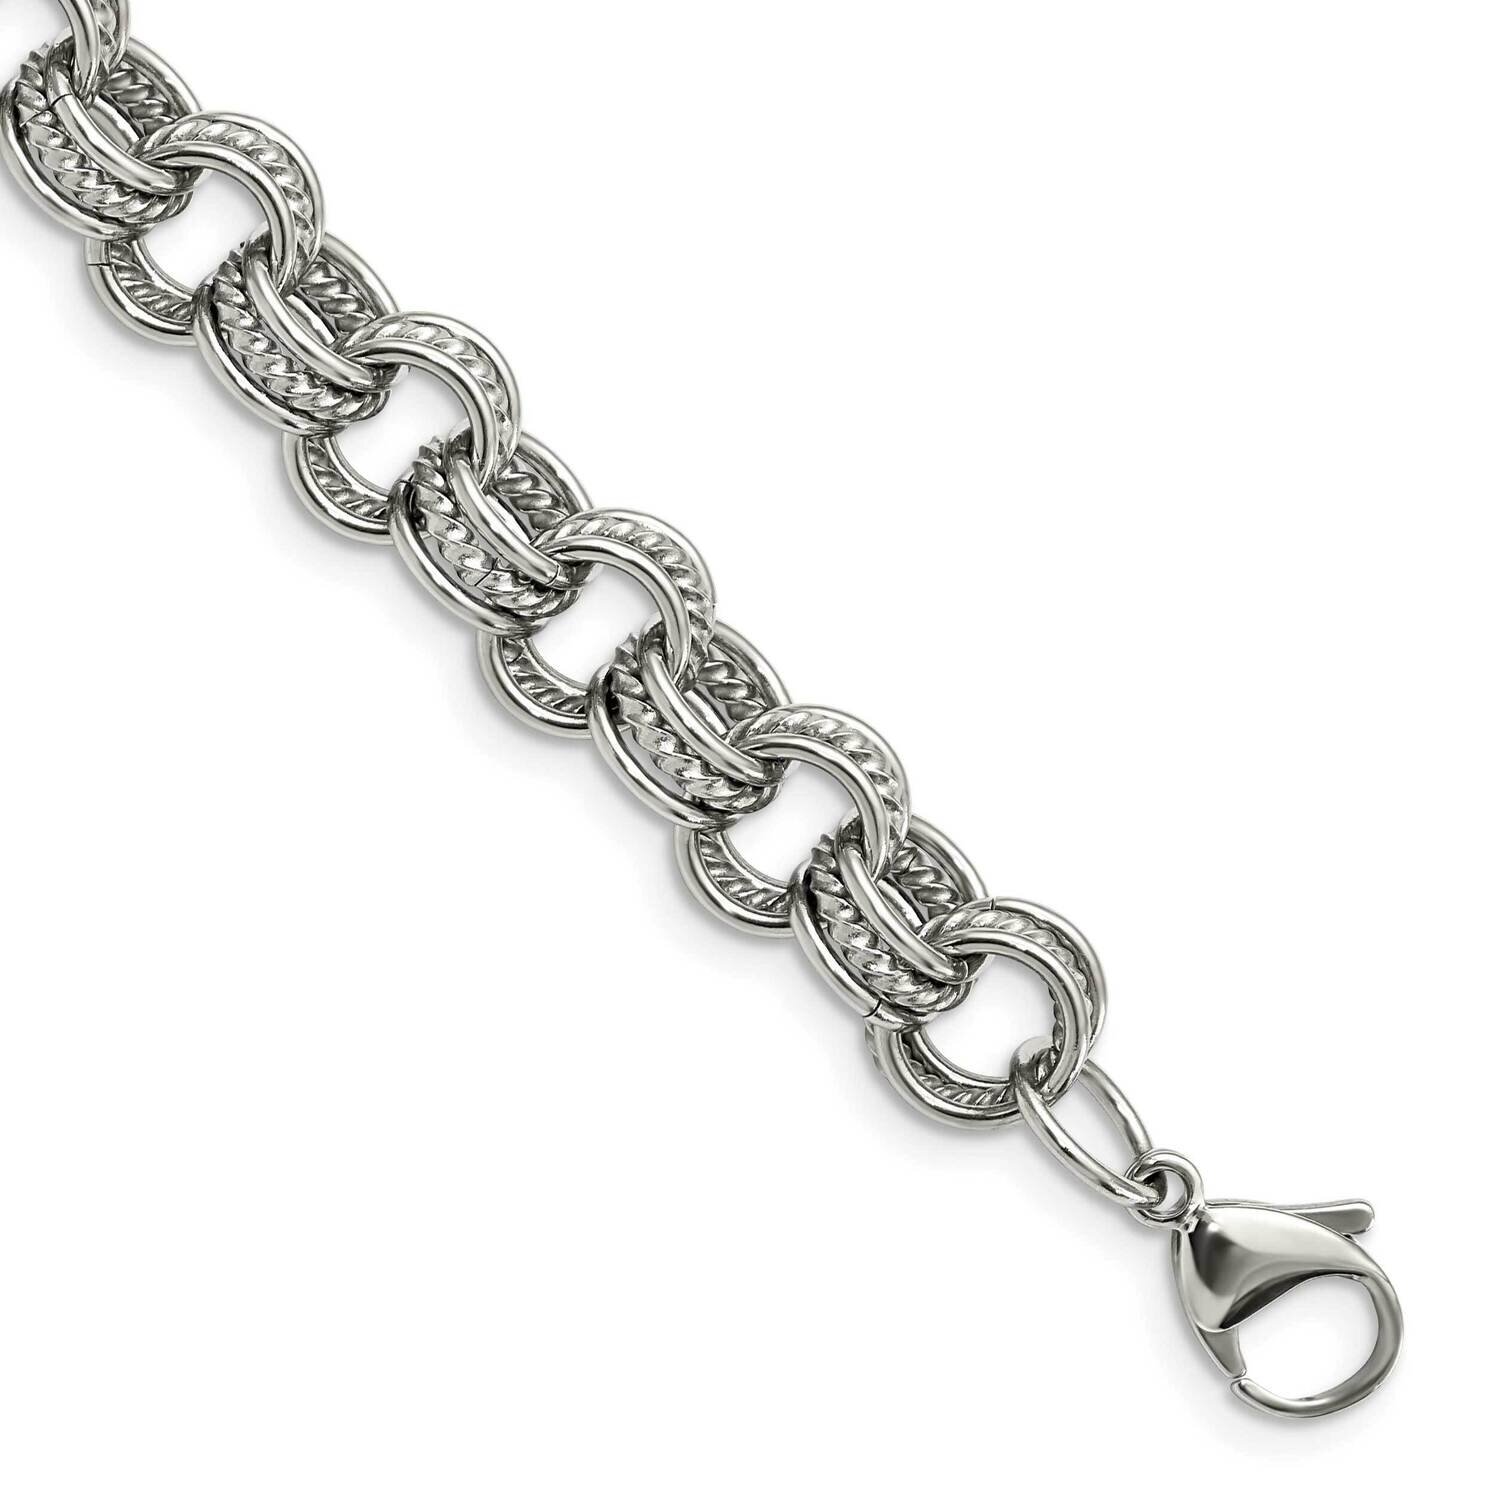 Multiple Links 7.75 Inch Bracelet Stainless Steel SRB743-7.75